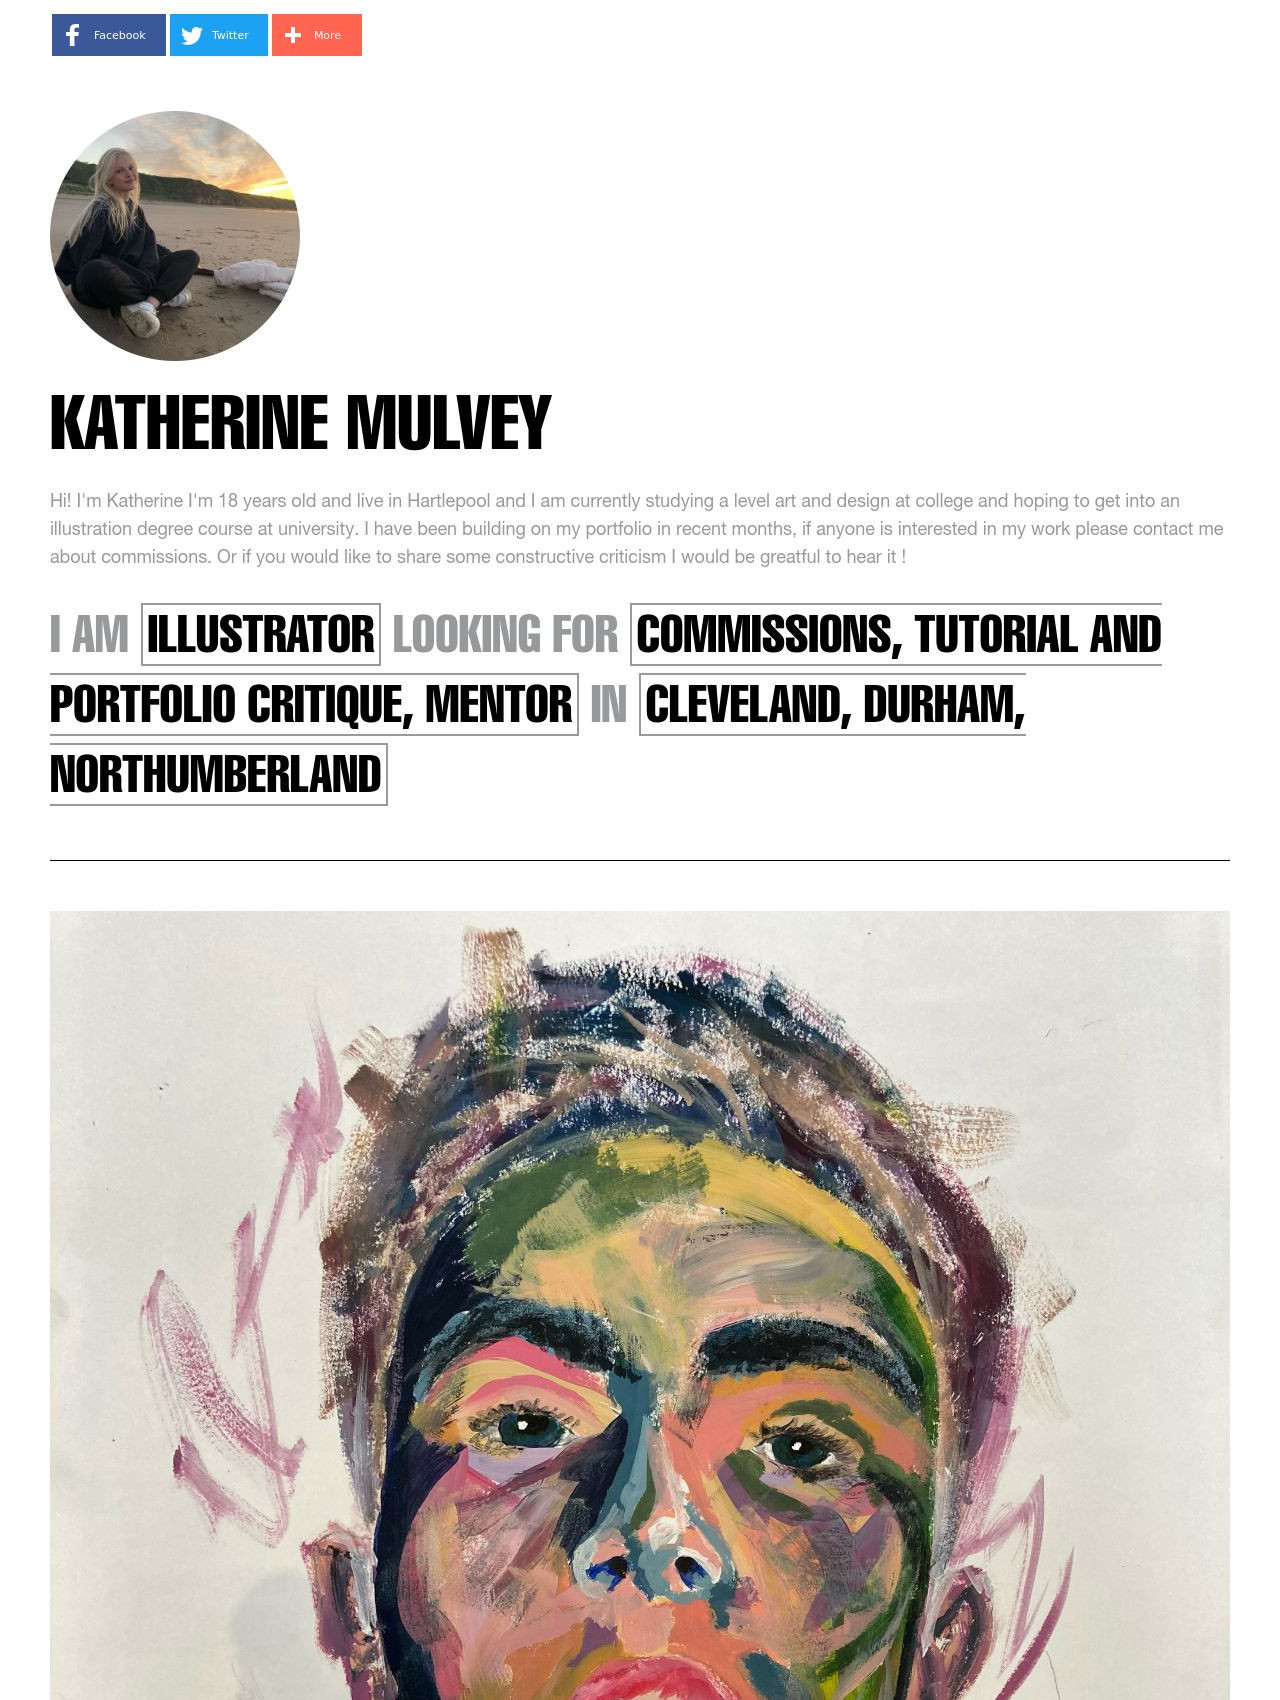 Katherine Mulvey